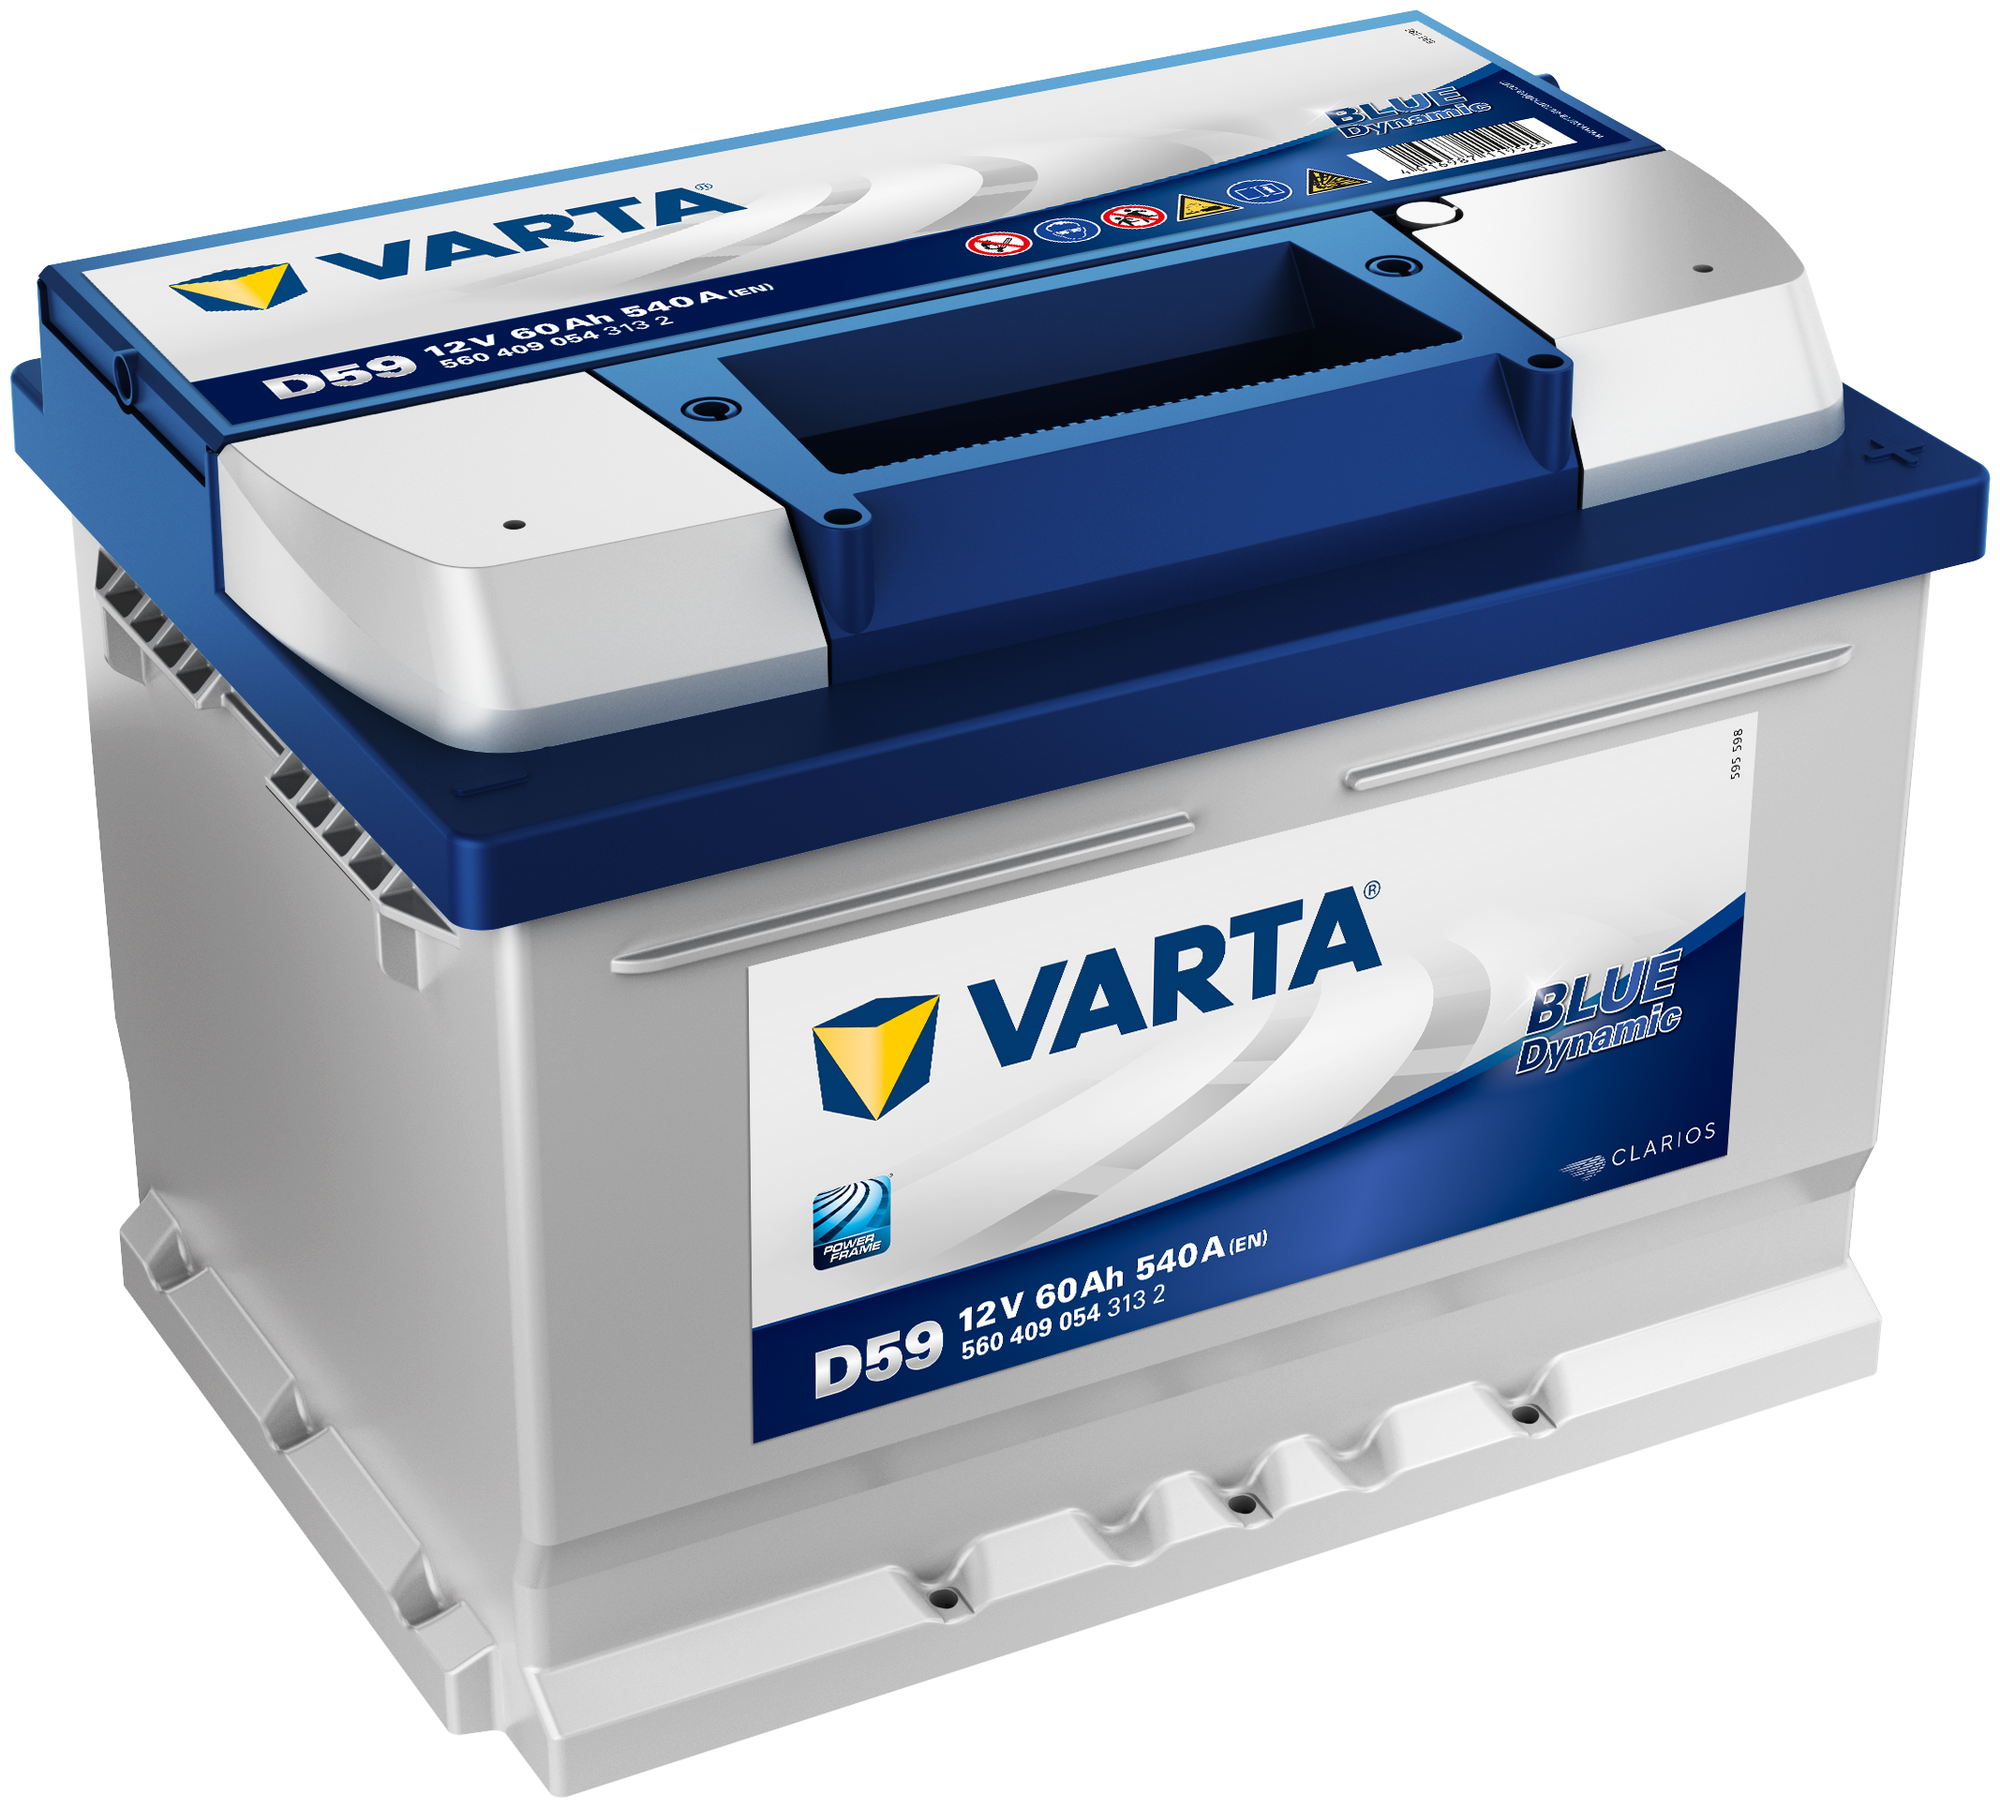 Аккумулятор для спецтехники VARTA Blue Dynamic D59 (560 409 054) 242x175x175